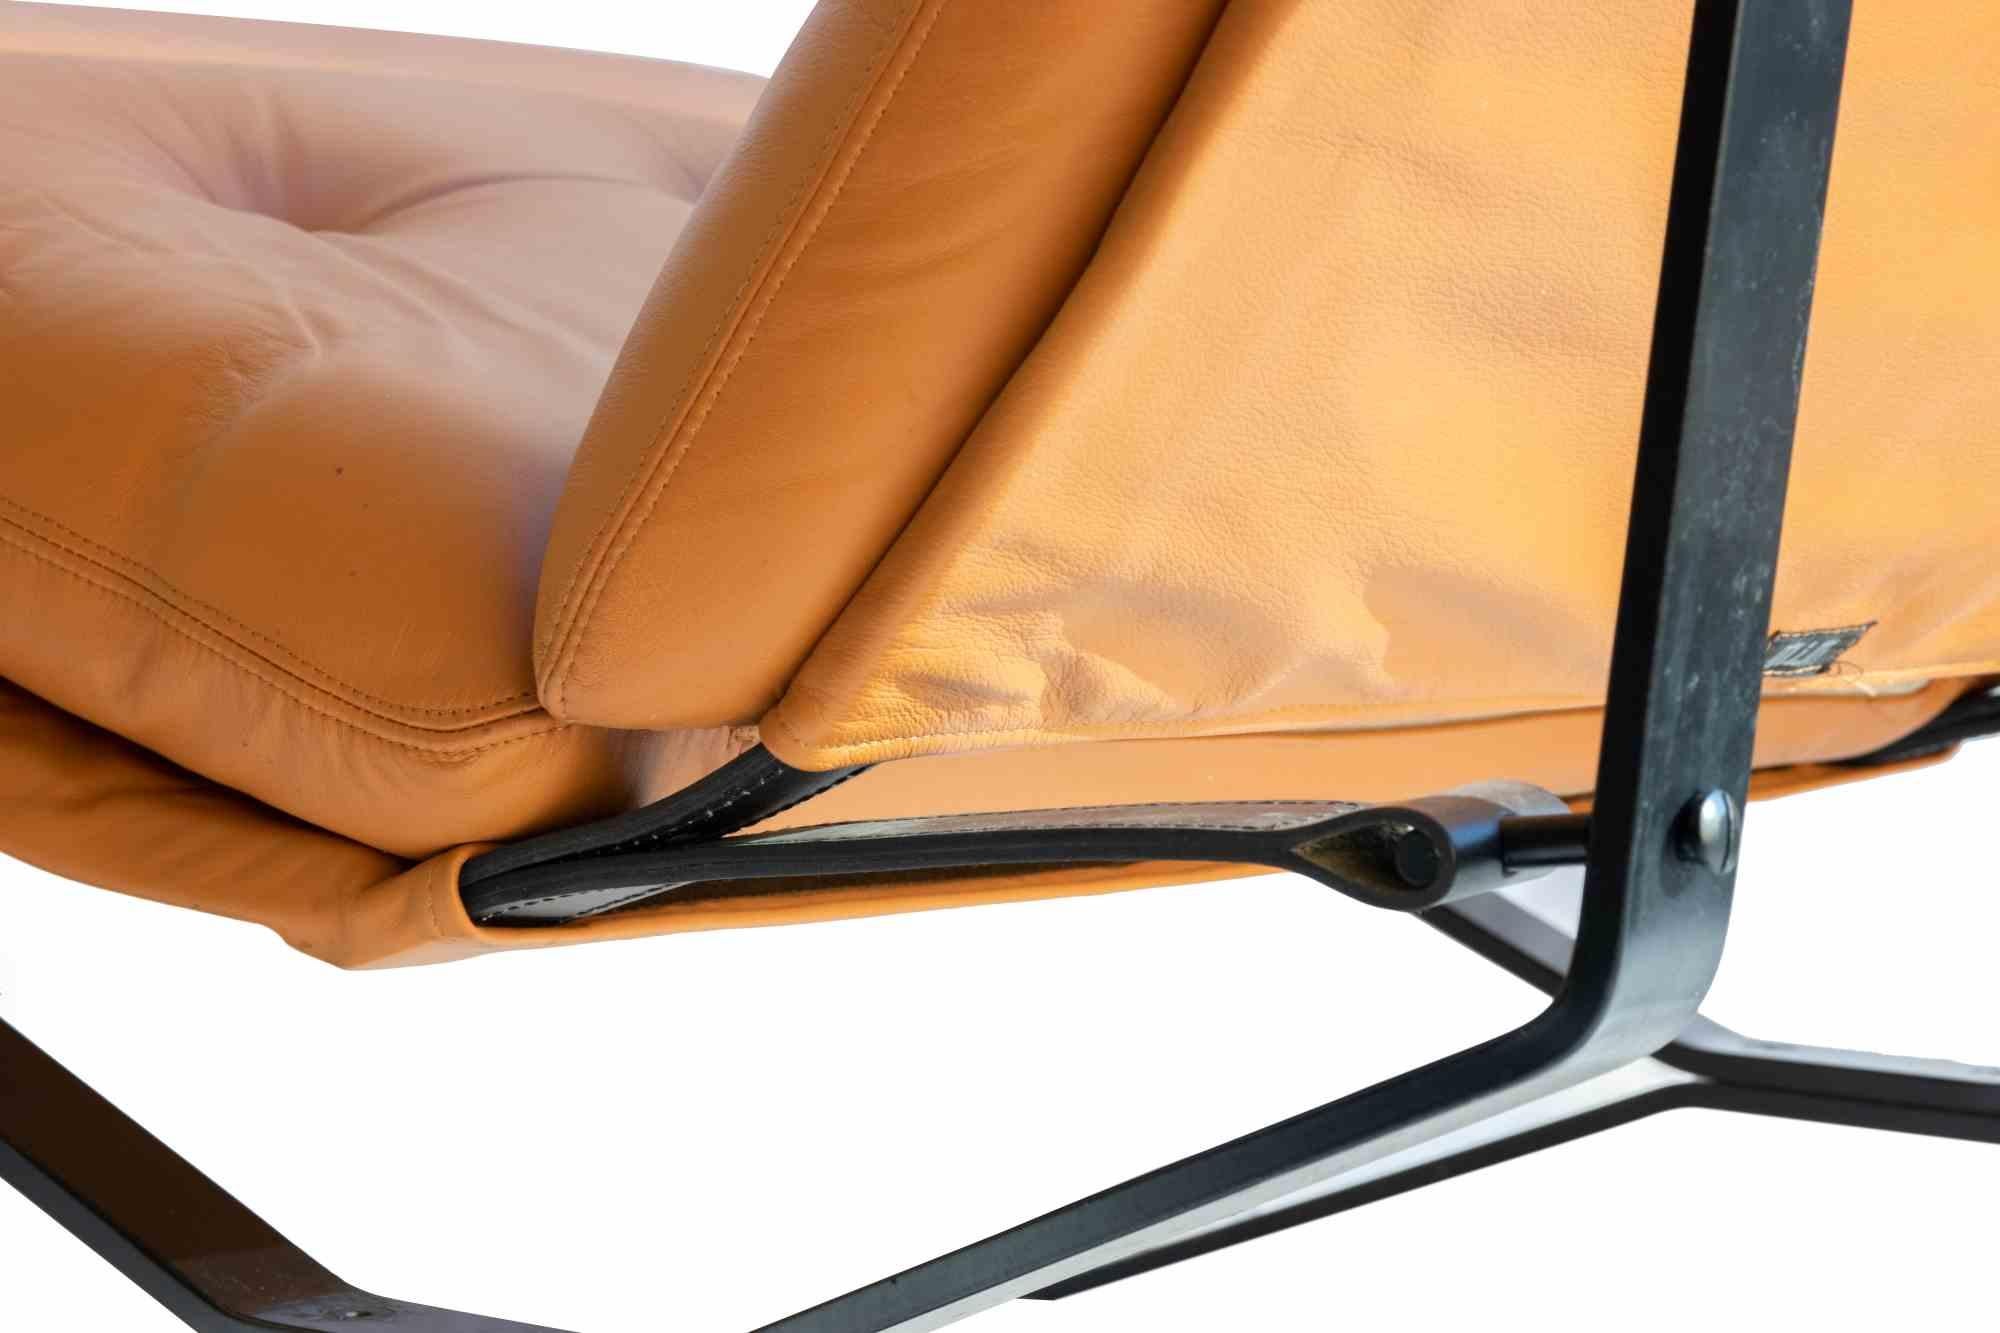 La paire de fauteuils Lotus est une pièce élégante de mobilier design fabriquée par Ico et Luisa Parisi au milieu du 20e siècle.

Rare paire de fauteuils modèle Lotus réalisée par le designer Ico Parisi pour son éditeur MIM Roma. Structure en métal